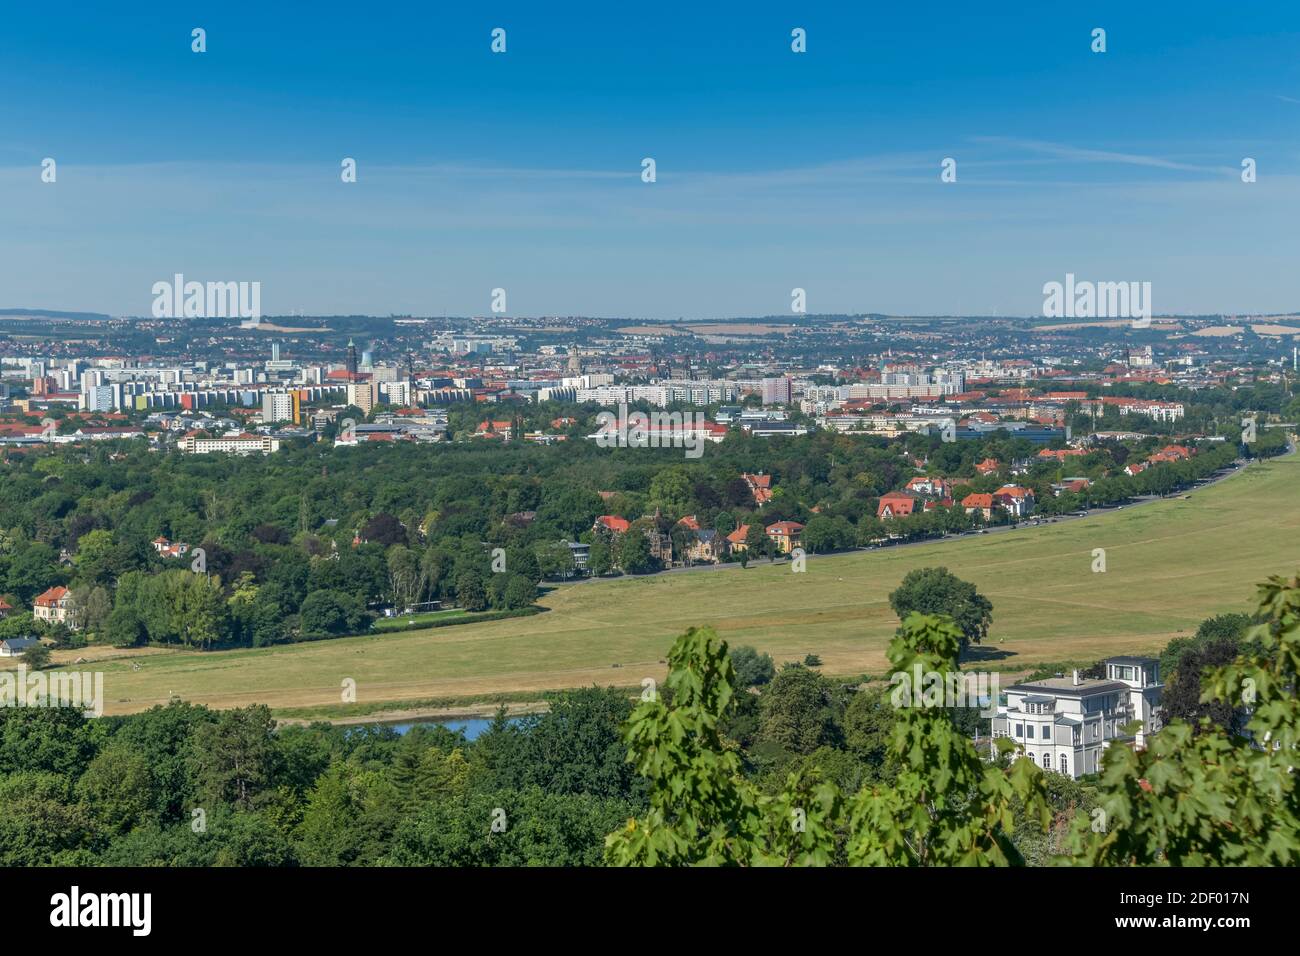 Stadtpanorama, Elbtal, Dresda, Sachsen, Deutschland Foto Stock